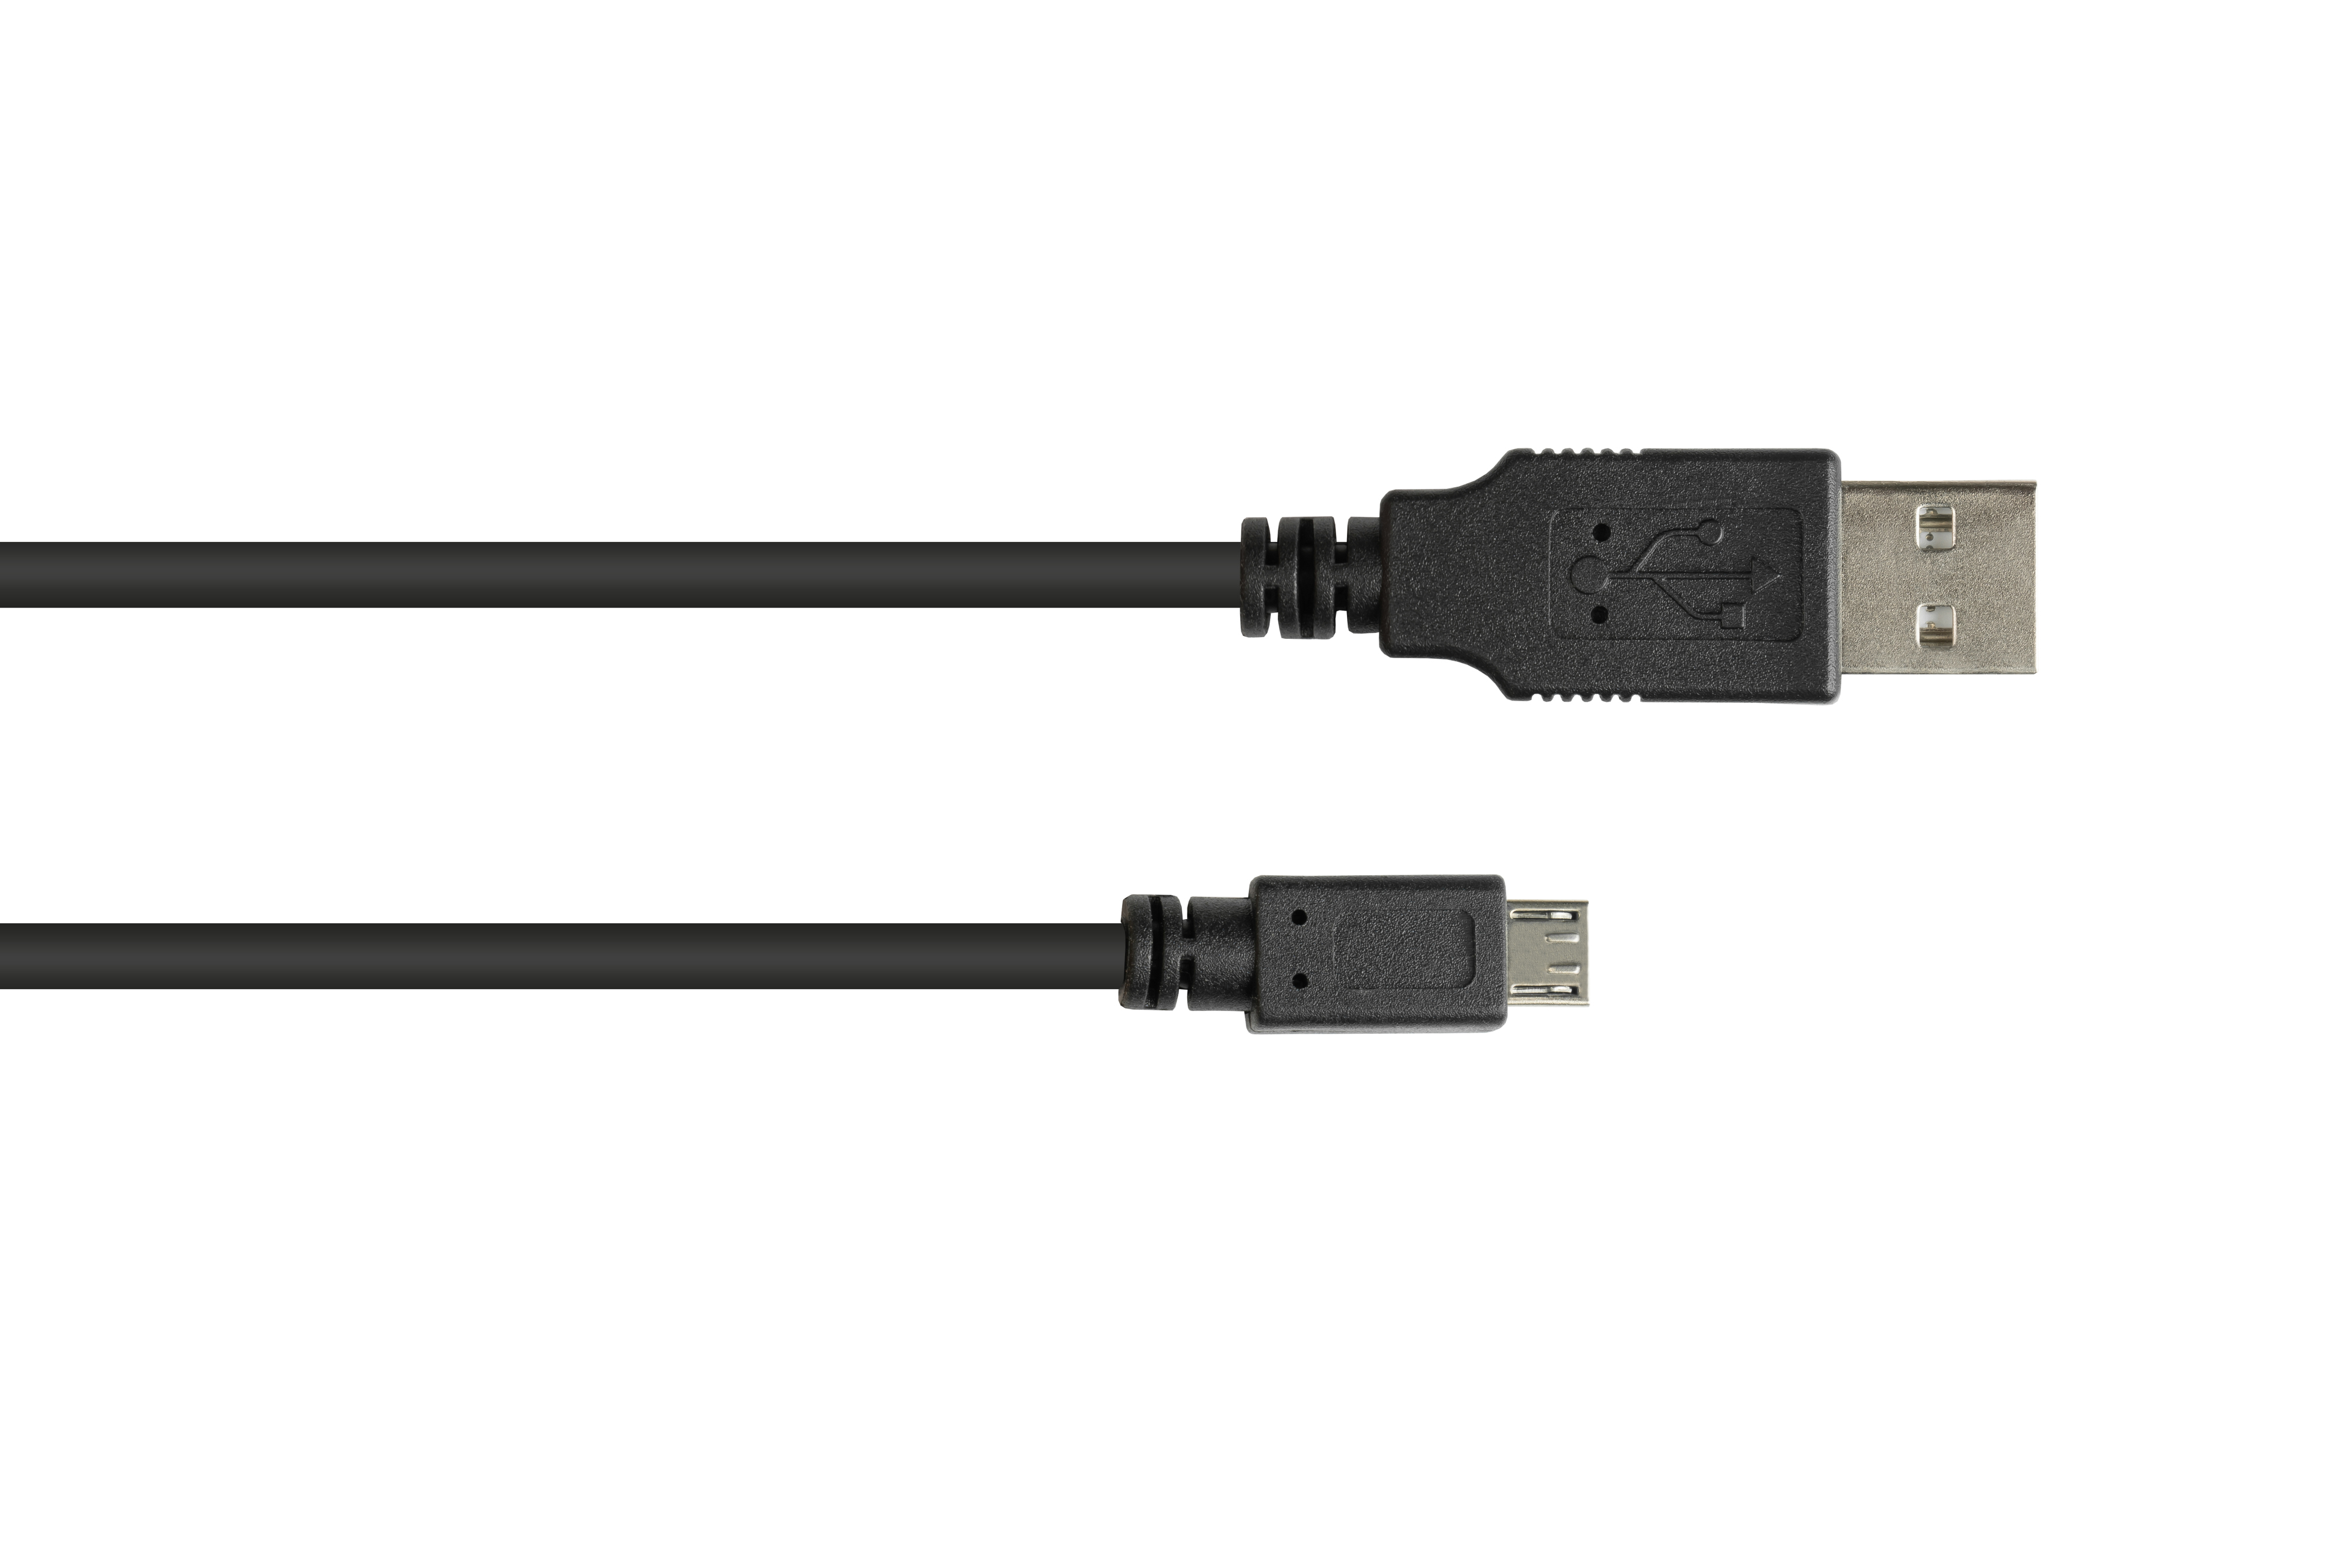 Anschlusskabel Micro B, schwarz A USB 2.0 CONNECTIONS Stecker an Stecker GOOD